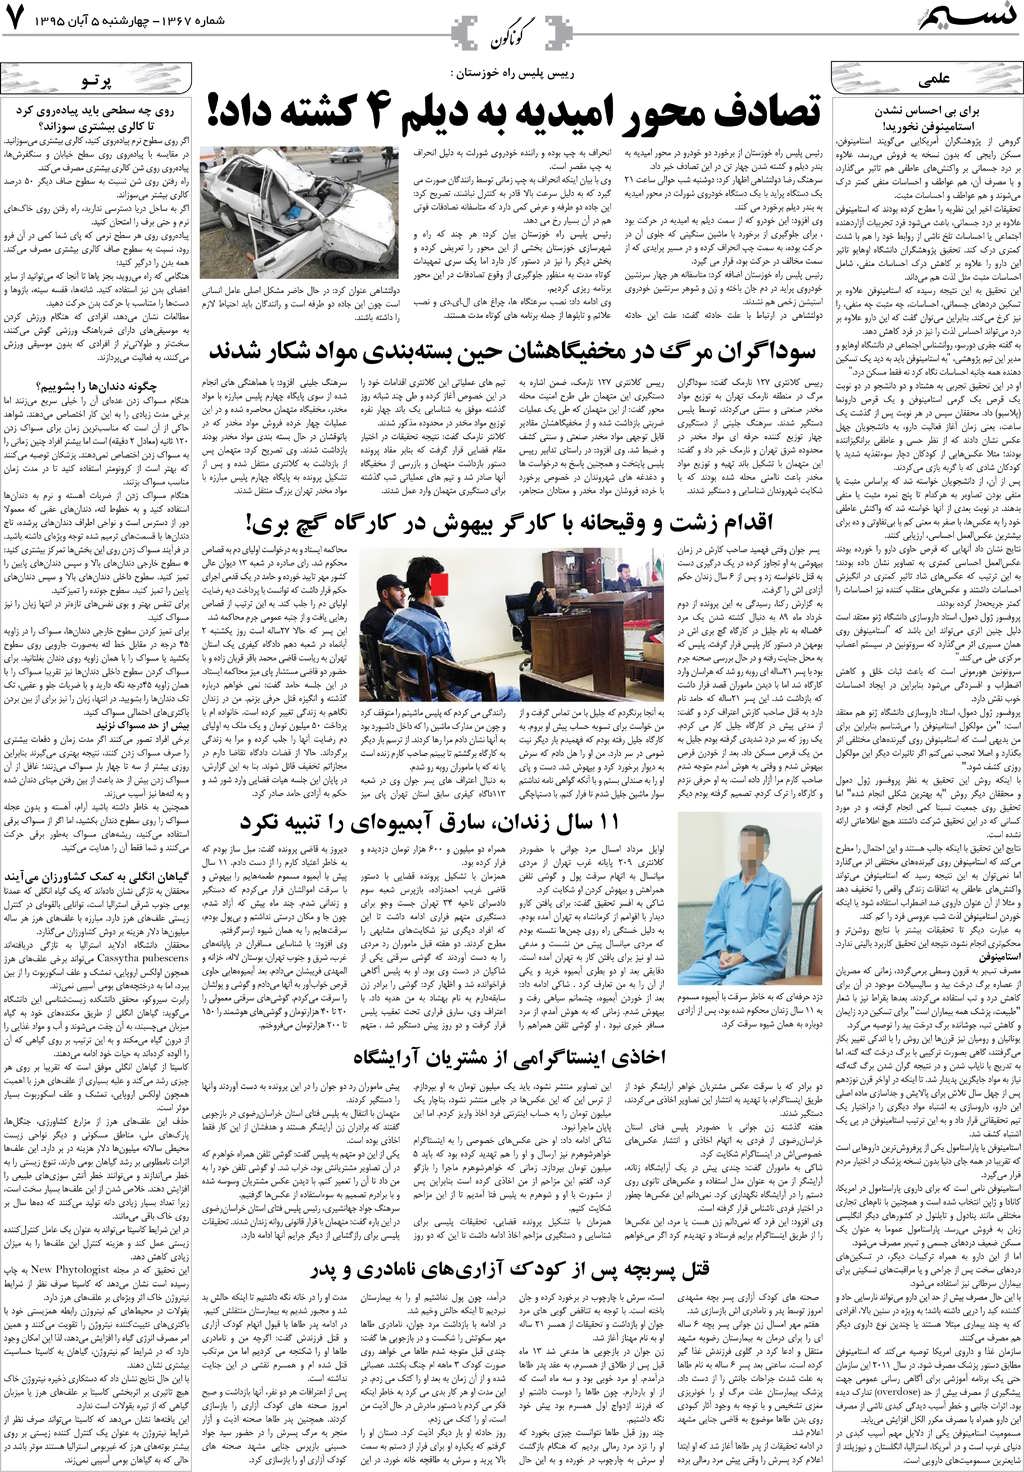 صفحه گوناگون روزنامه نسیم شماره 1367